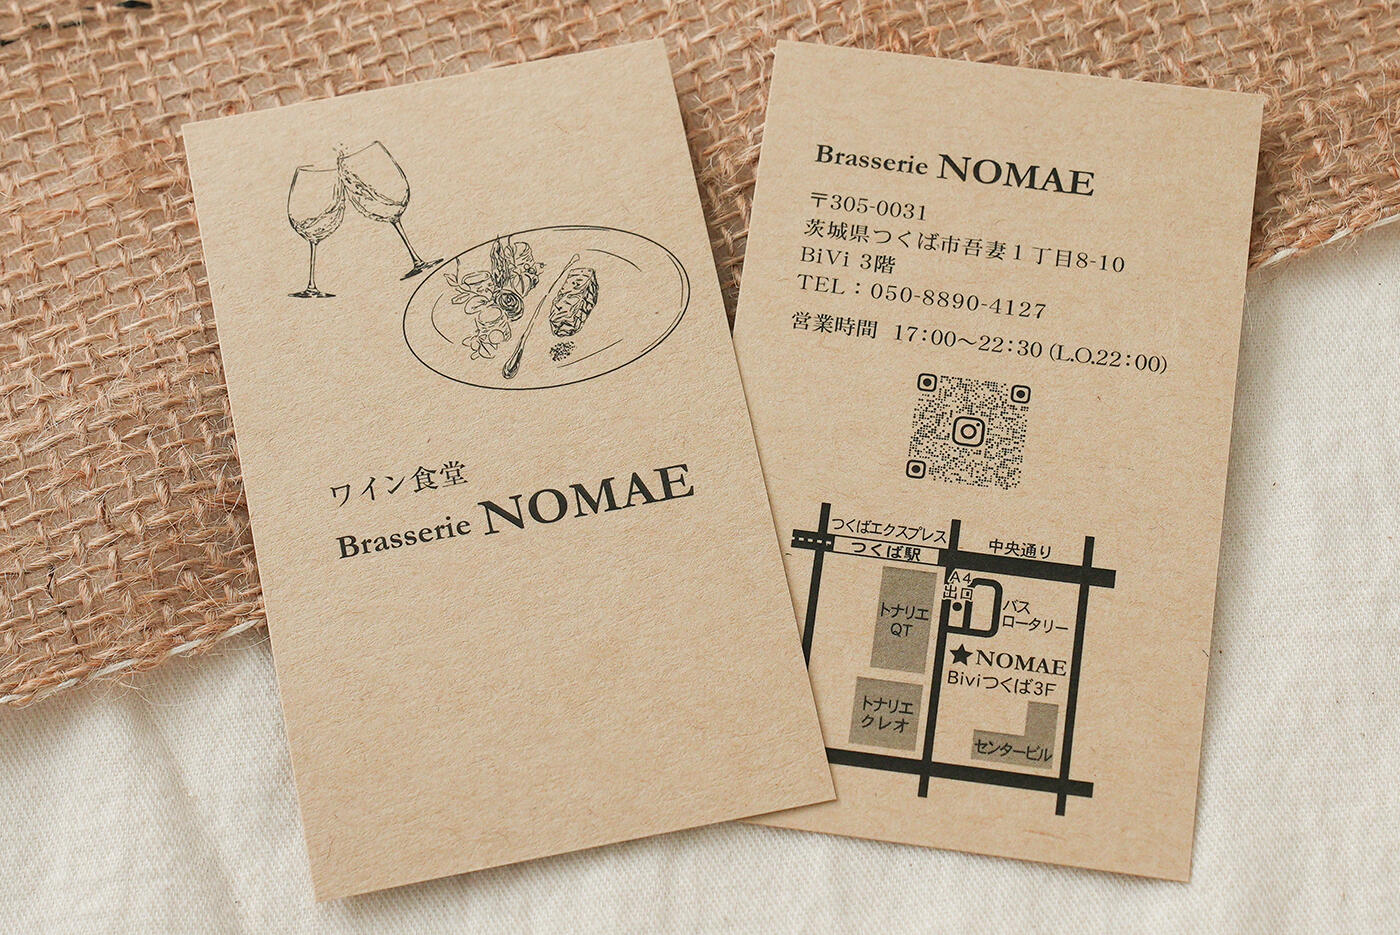 ワイン食堂ショップカード+名刺を作成